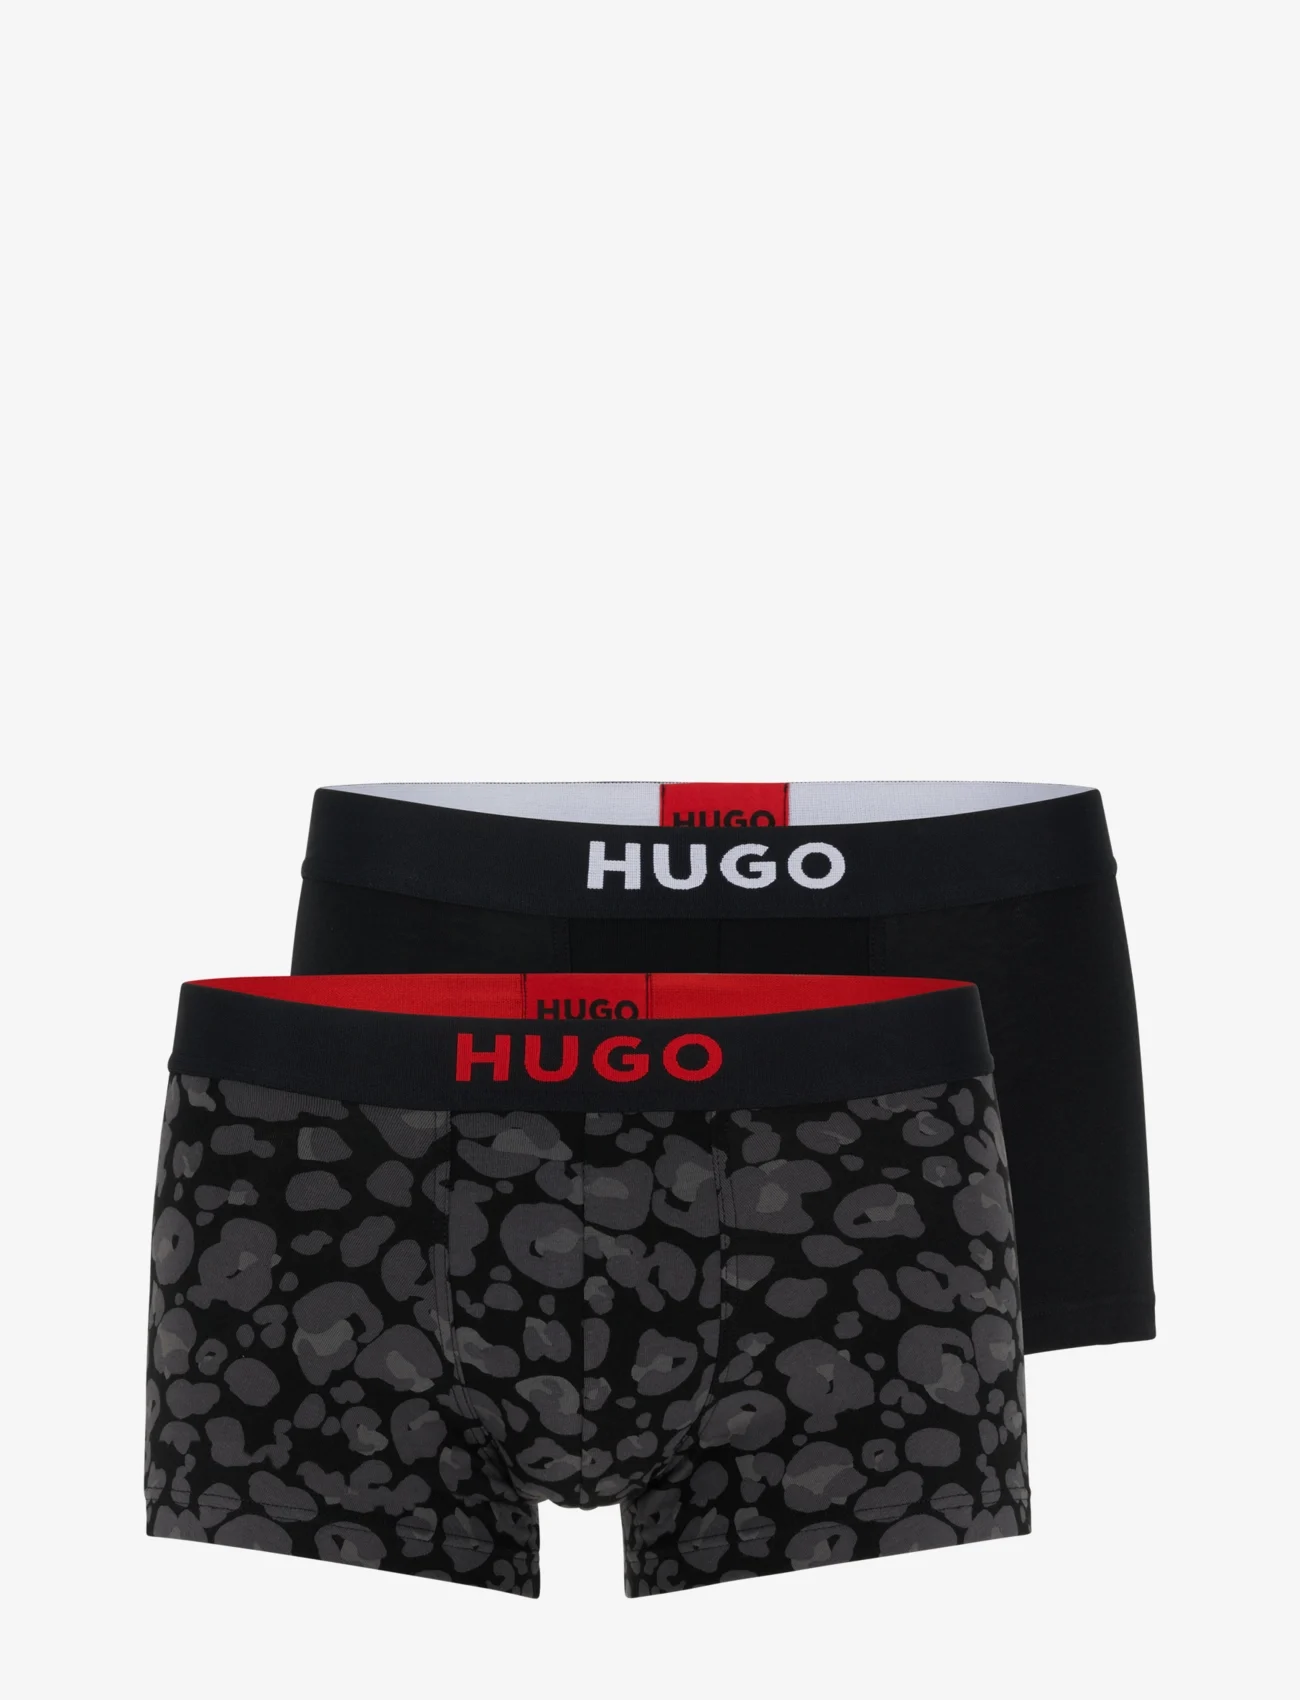 HUGO - TRUNK BROTHER PACK - laveste priser - open grey - 0